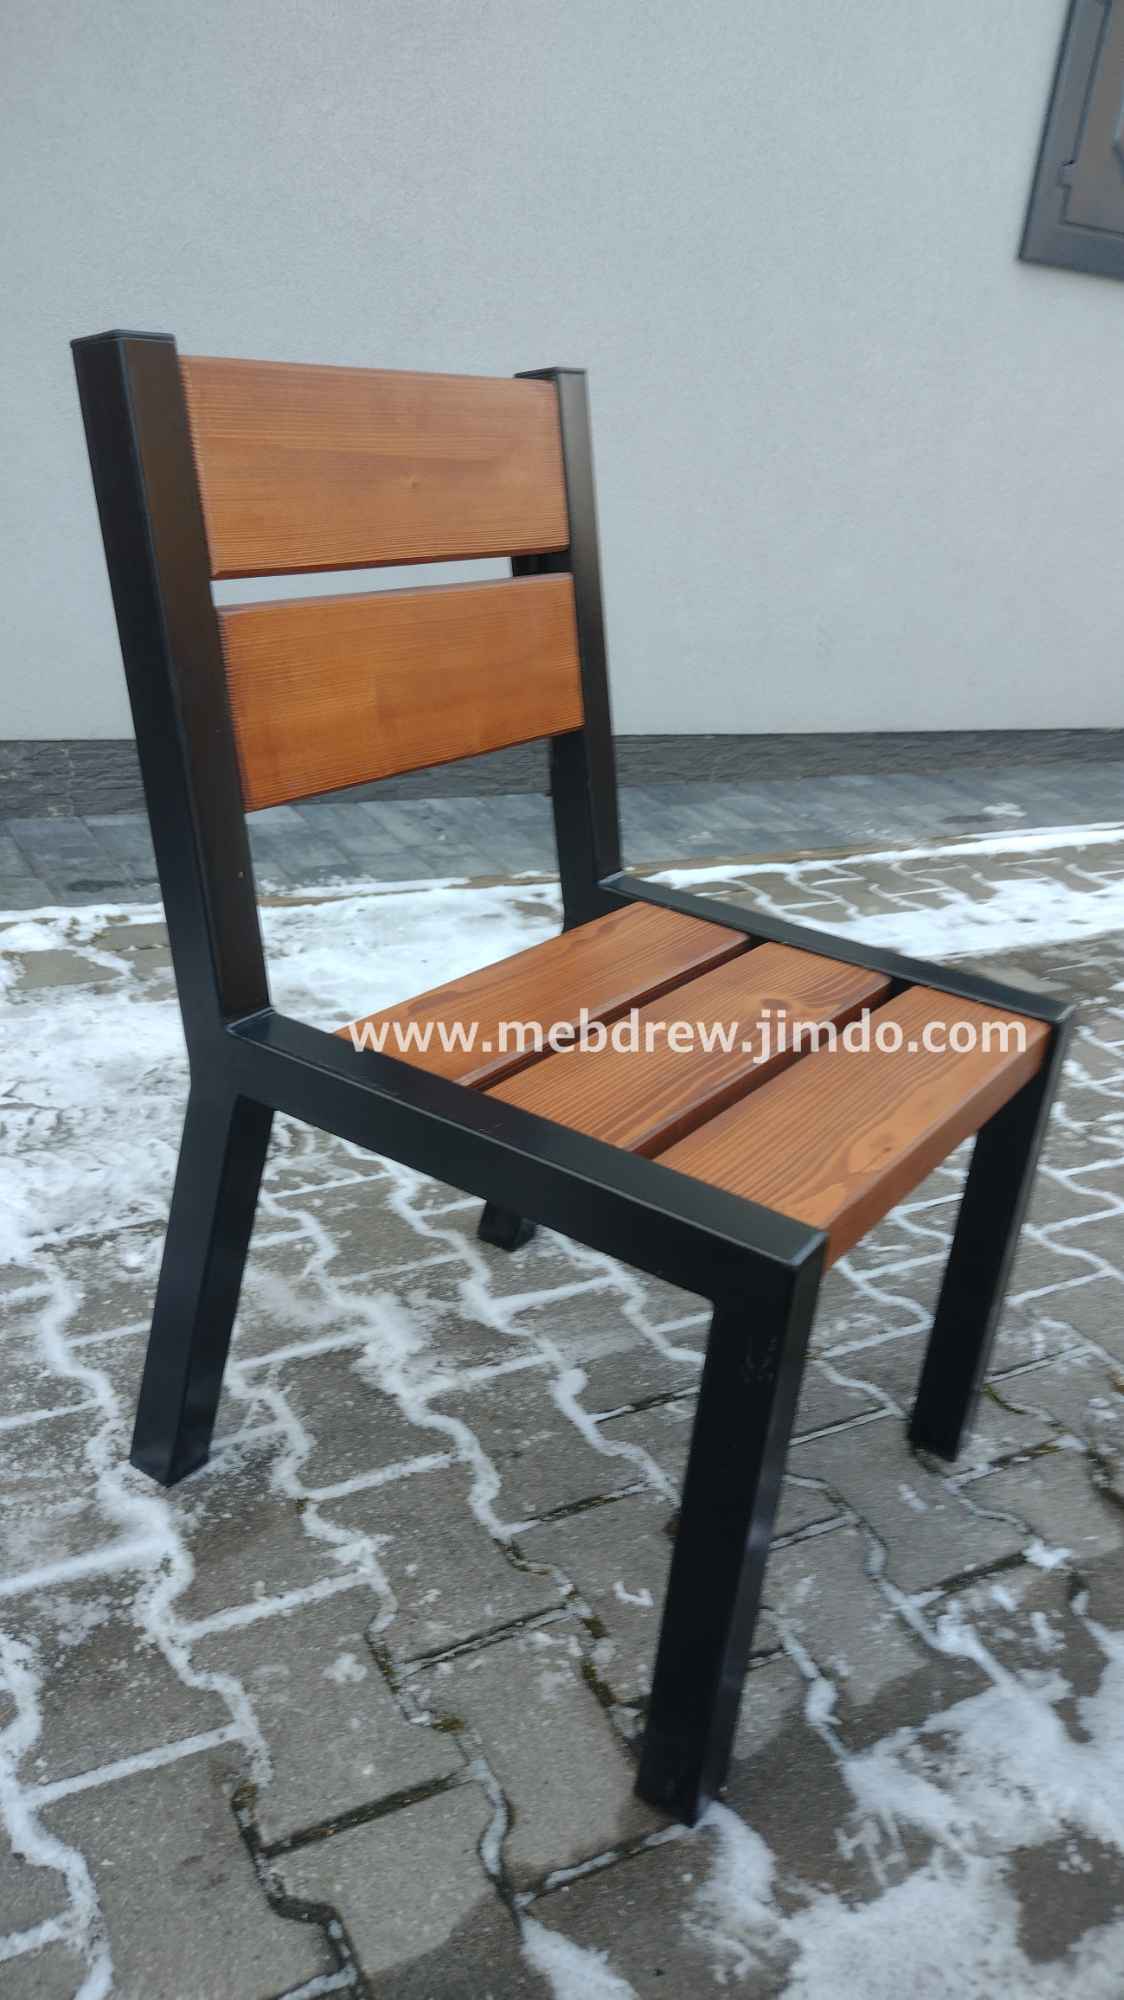 Stół loft ogrodowy drewno+metal ławki fotele zestaw mebli Tokarnia - zdjęcie 3